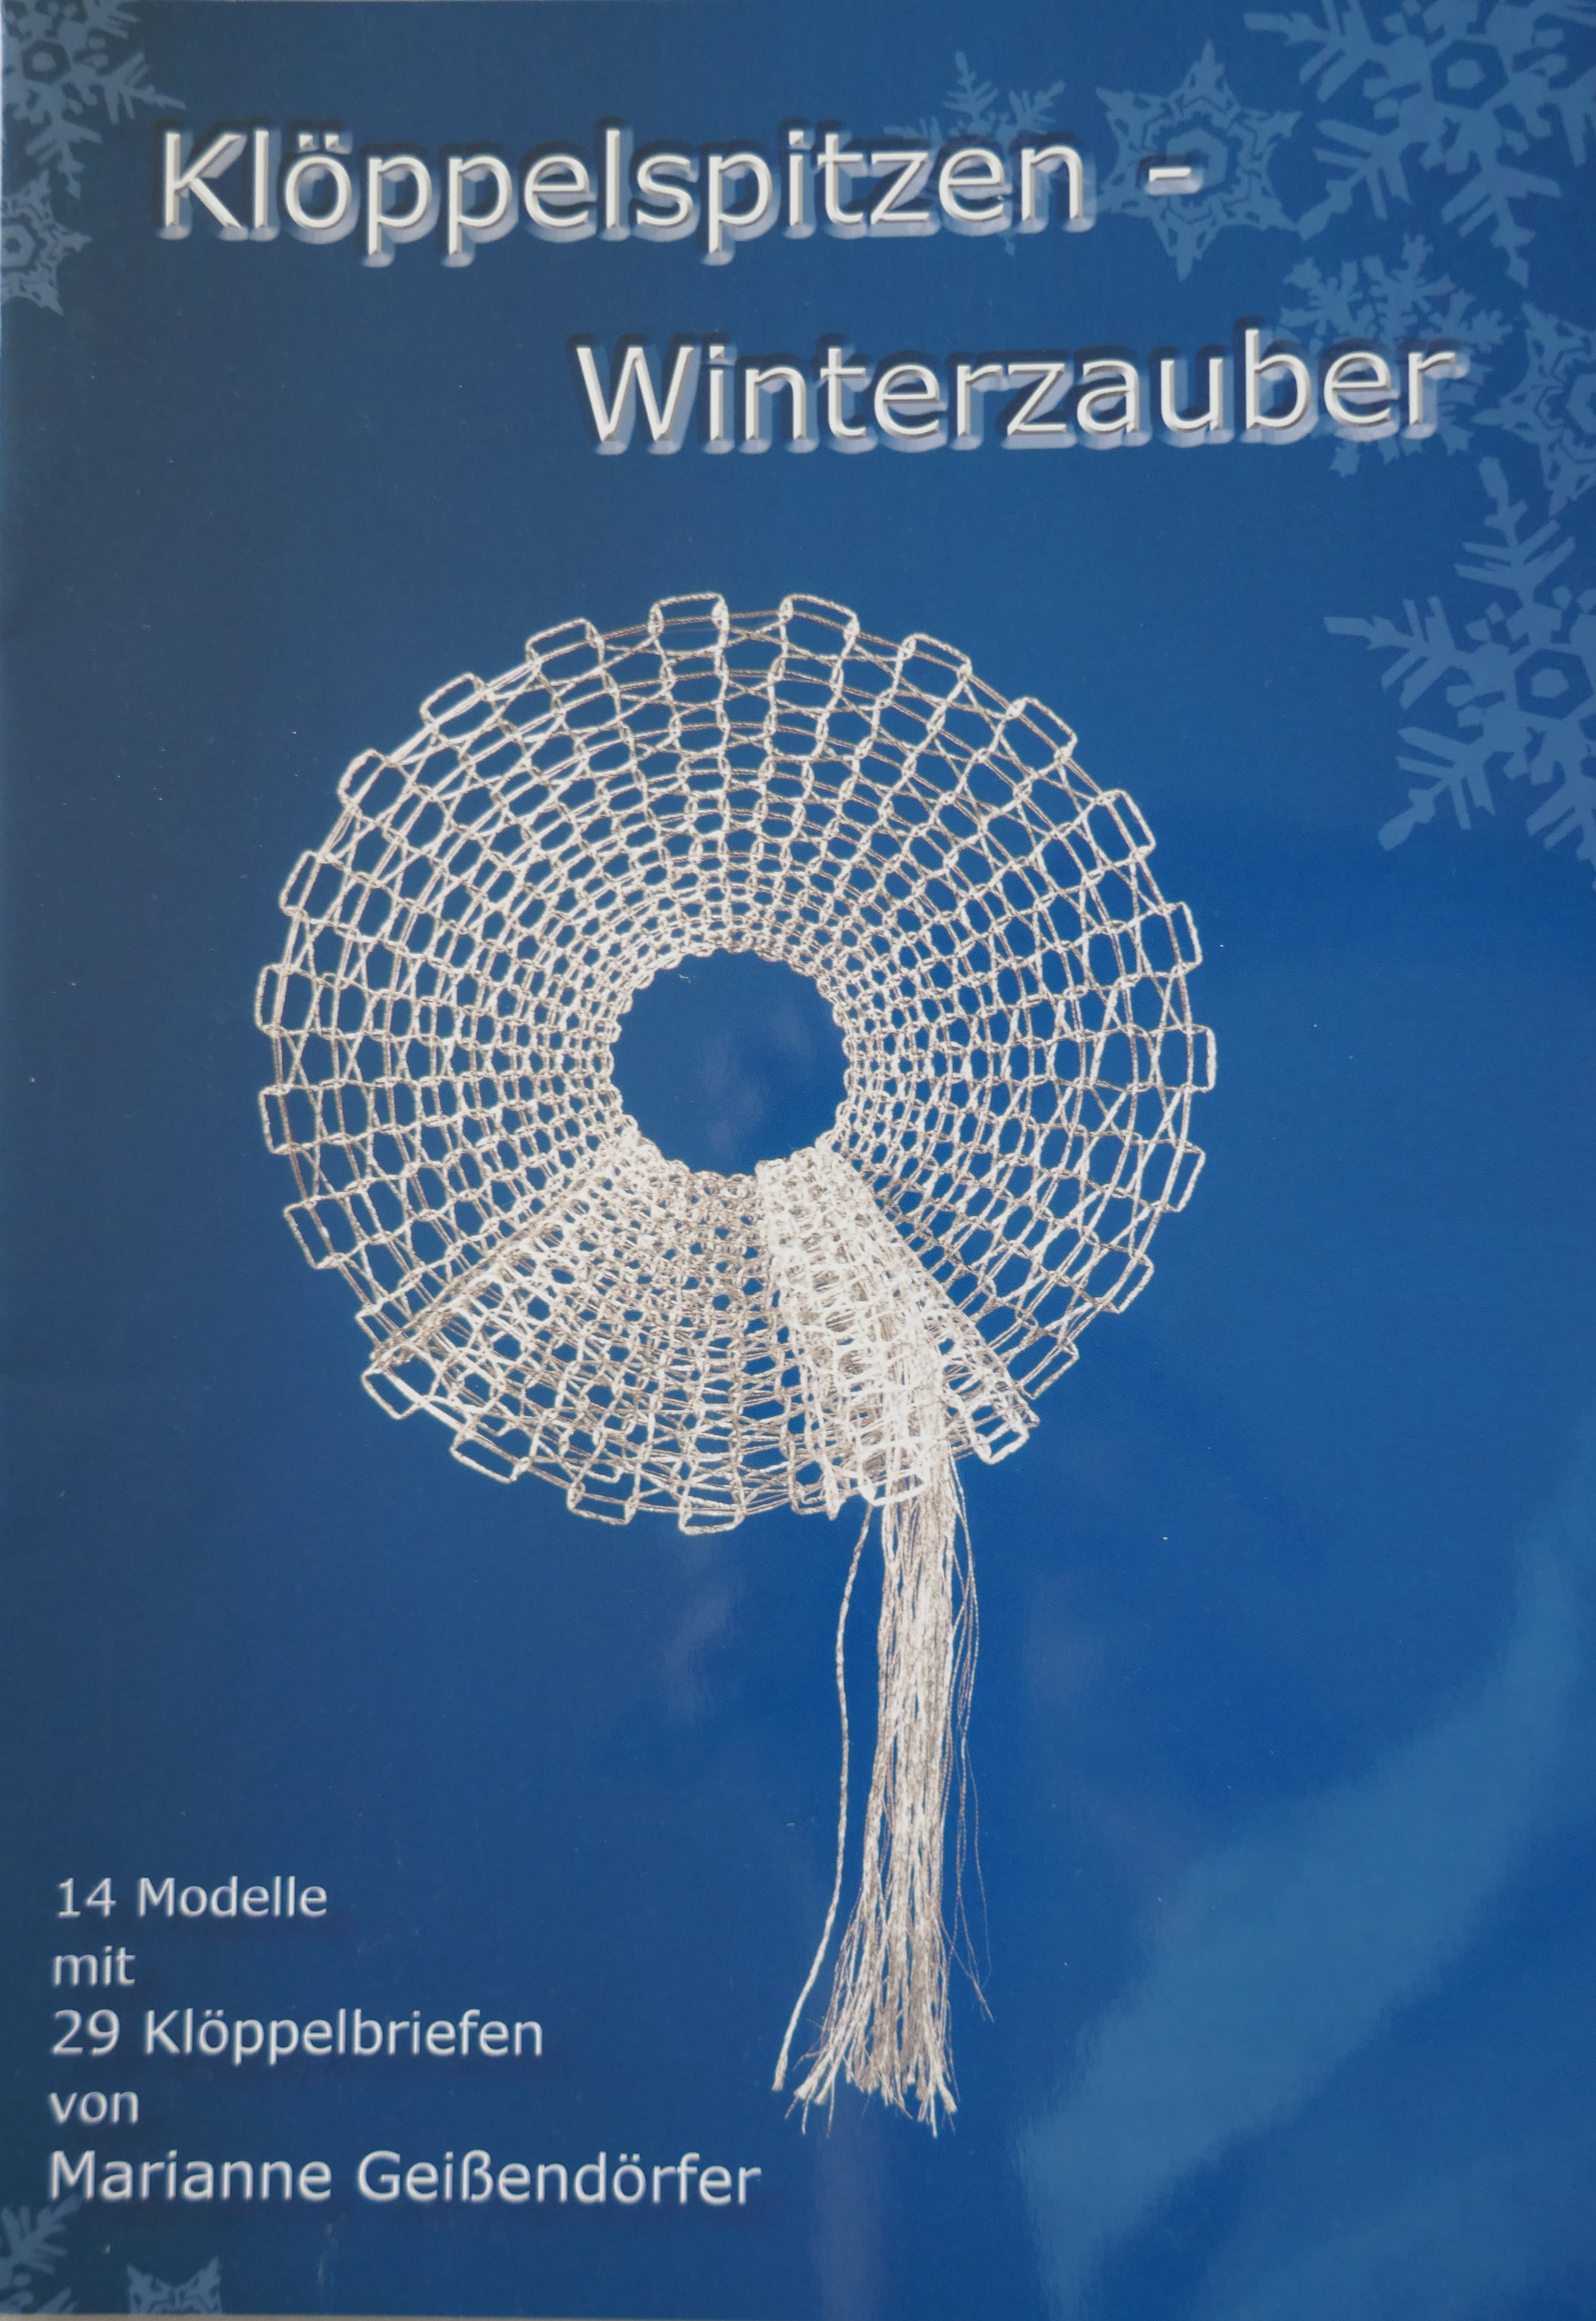 Klöppelspitze Winterzauber